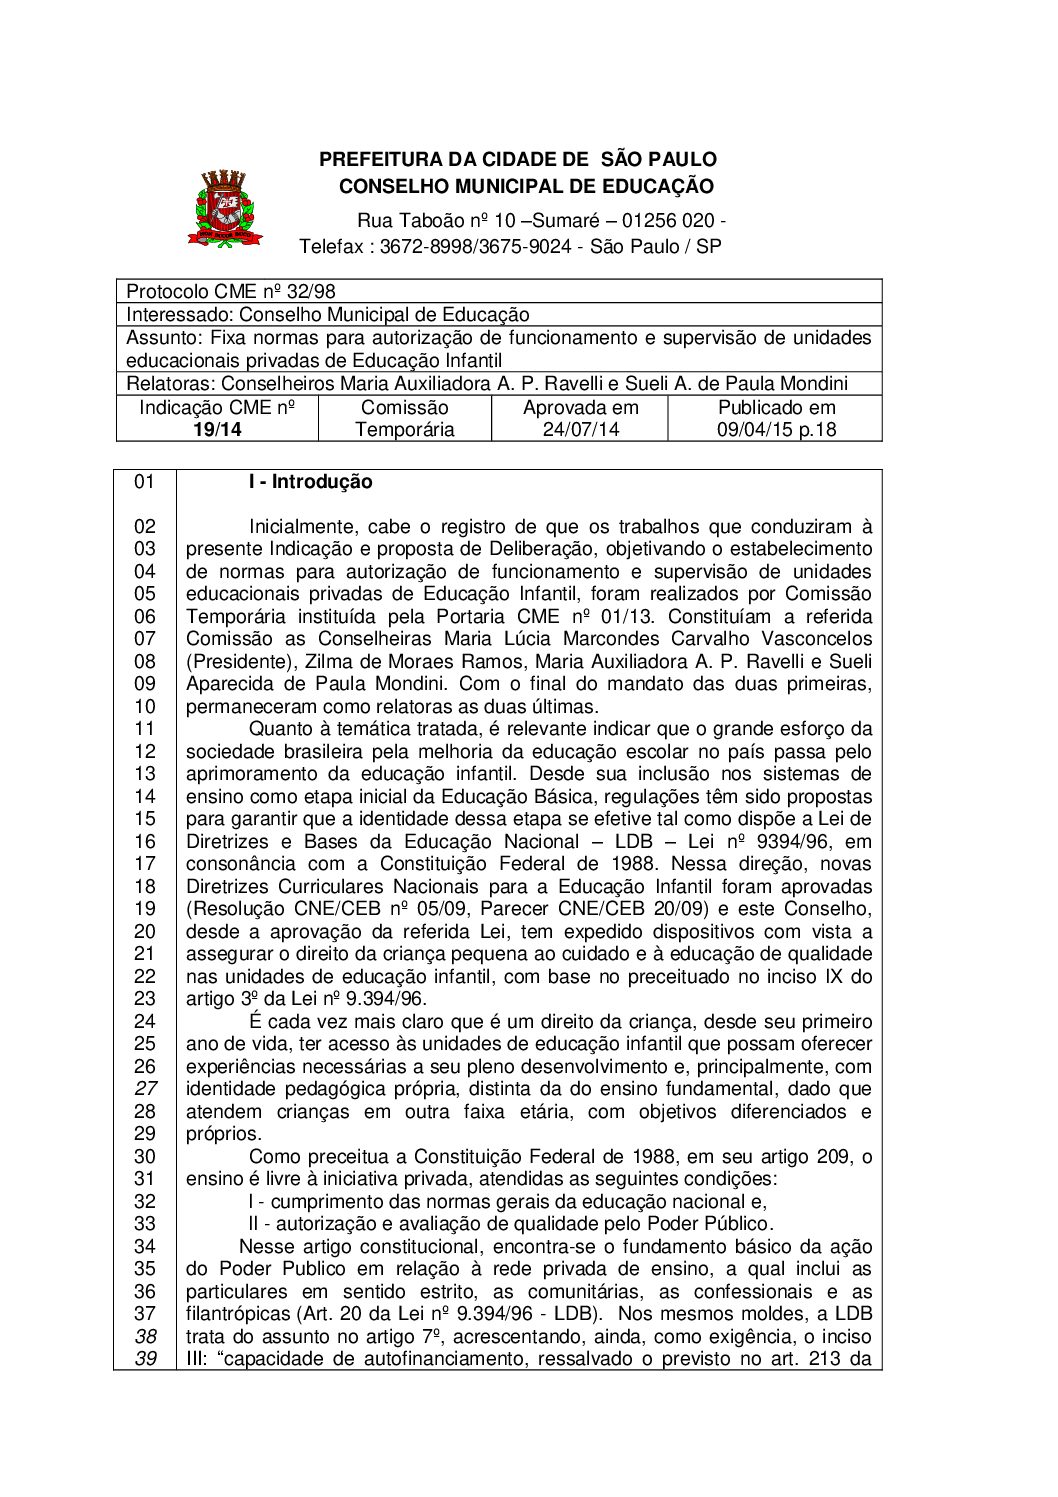 Indicação CME nº 19/2014 - Fixa normas para autorização de funcionamento e supervisão de unidades educacionais privadas de Educação Infantil